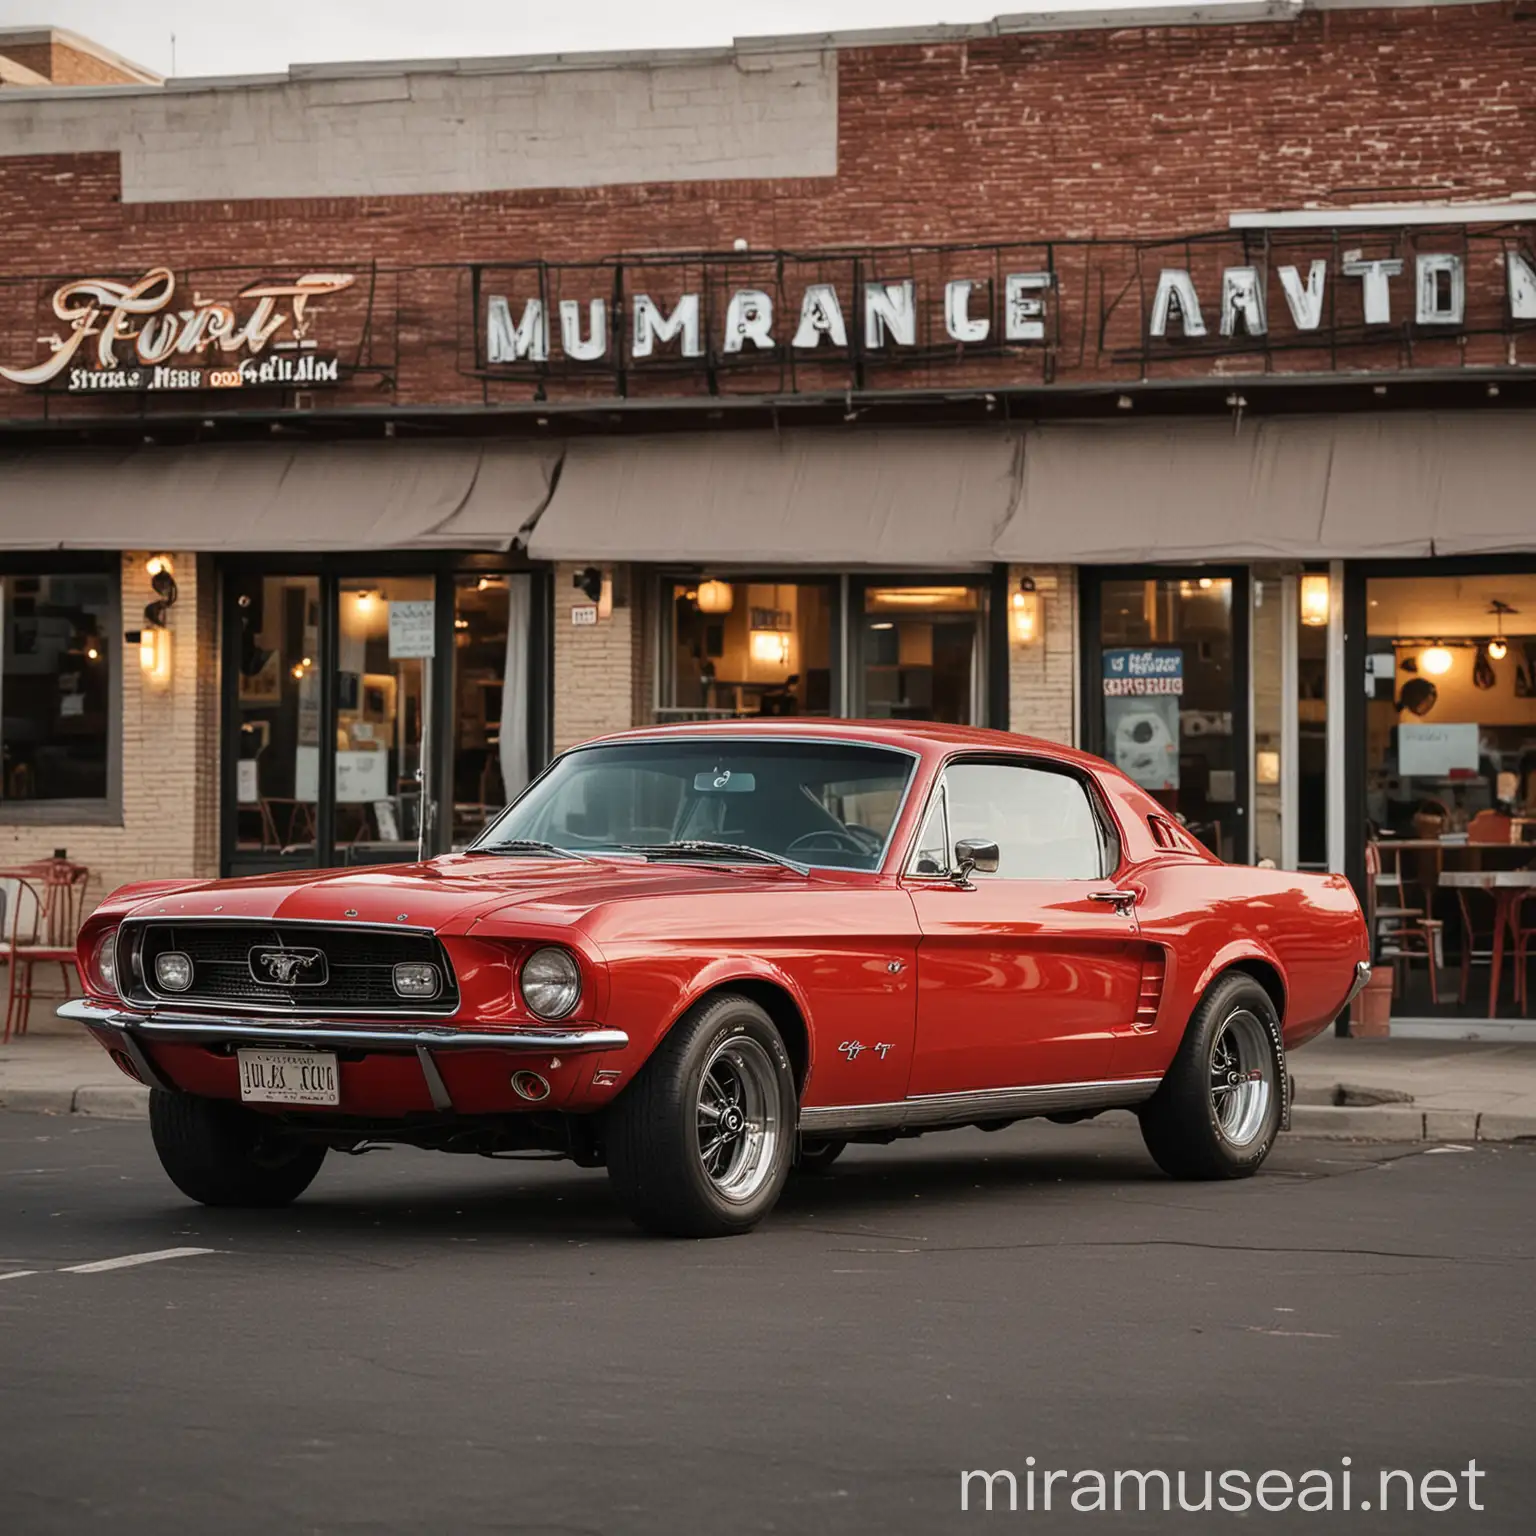 Sebuah mobil muscle car Ford Mustang tahun 1967 berwarna merah tampak dari samping sedang parkir di depan sebuah restoran.